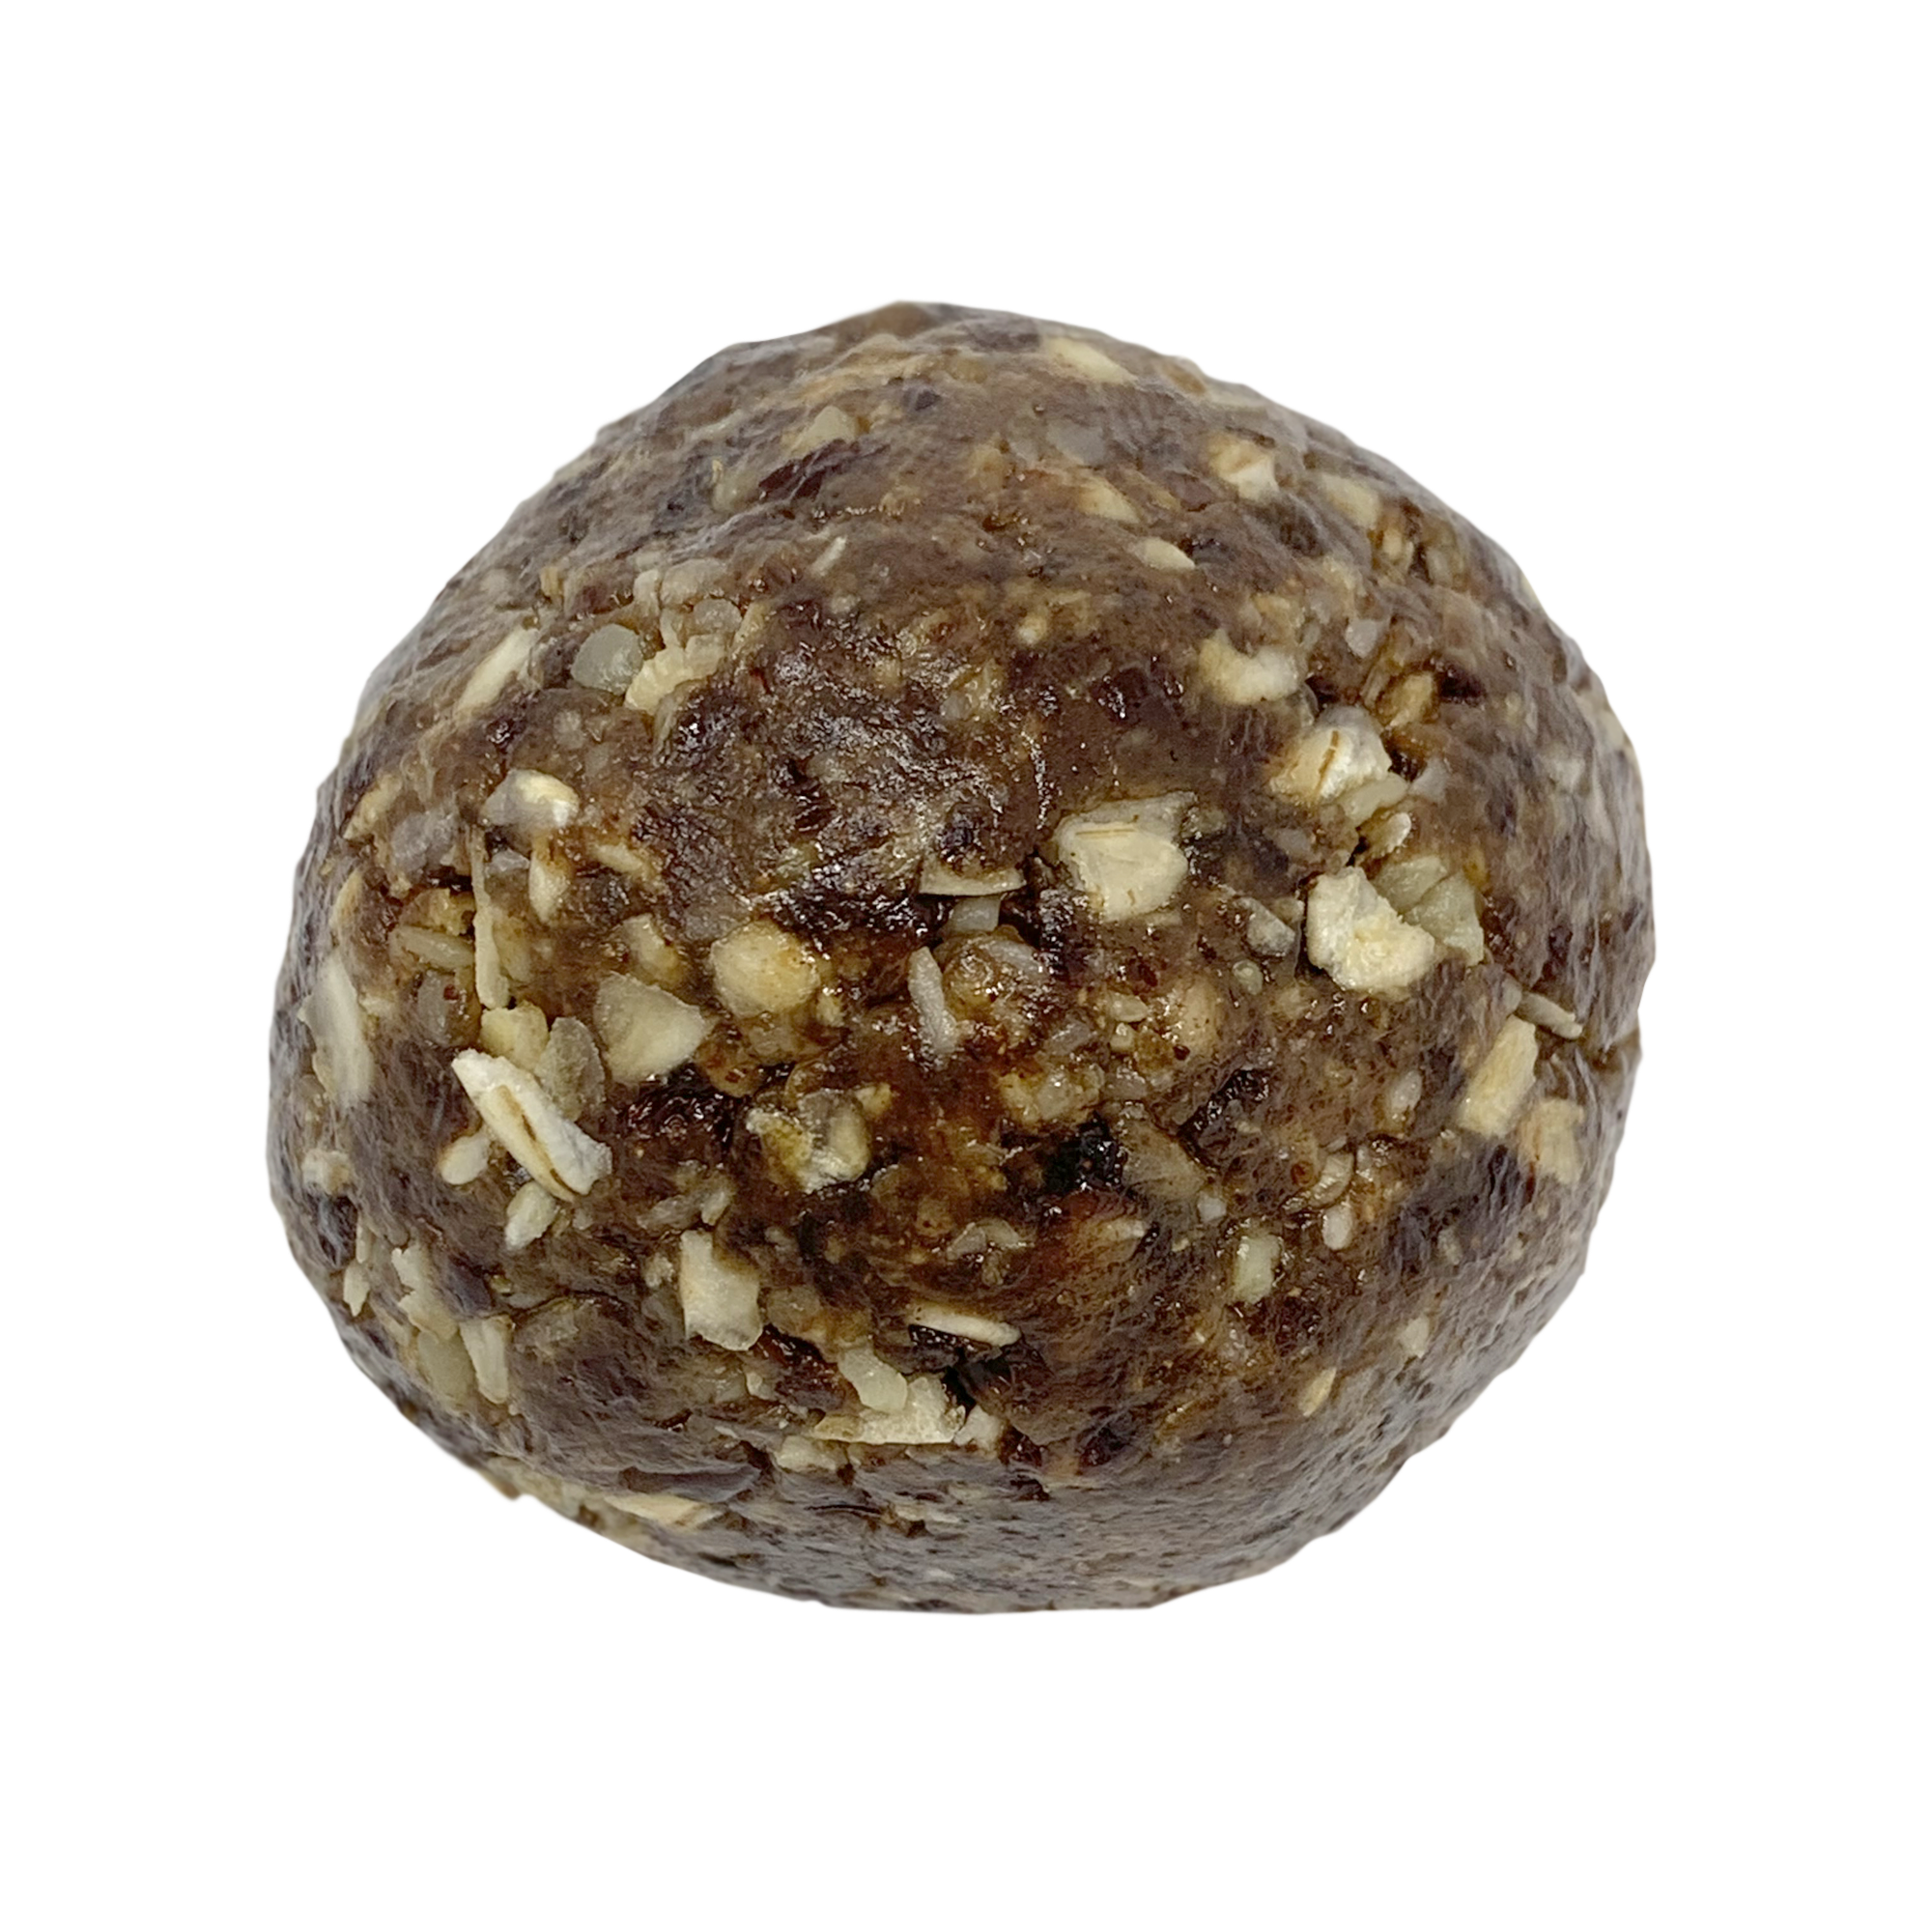 Oatmeal Raisin Cookie Oatballs | No-bake Energy Balls